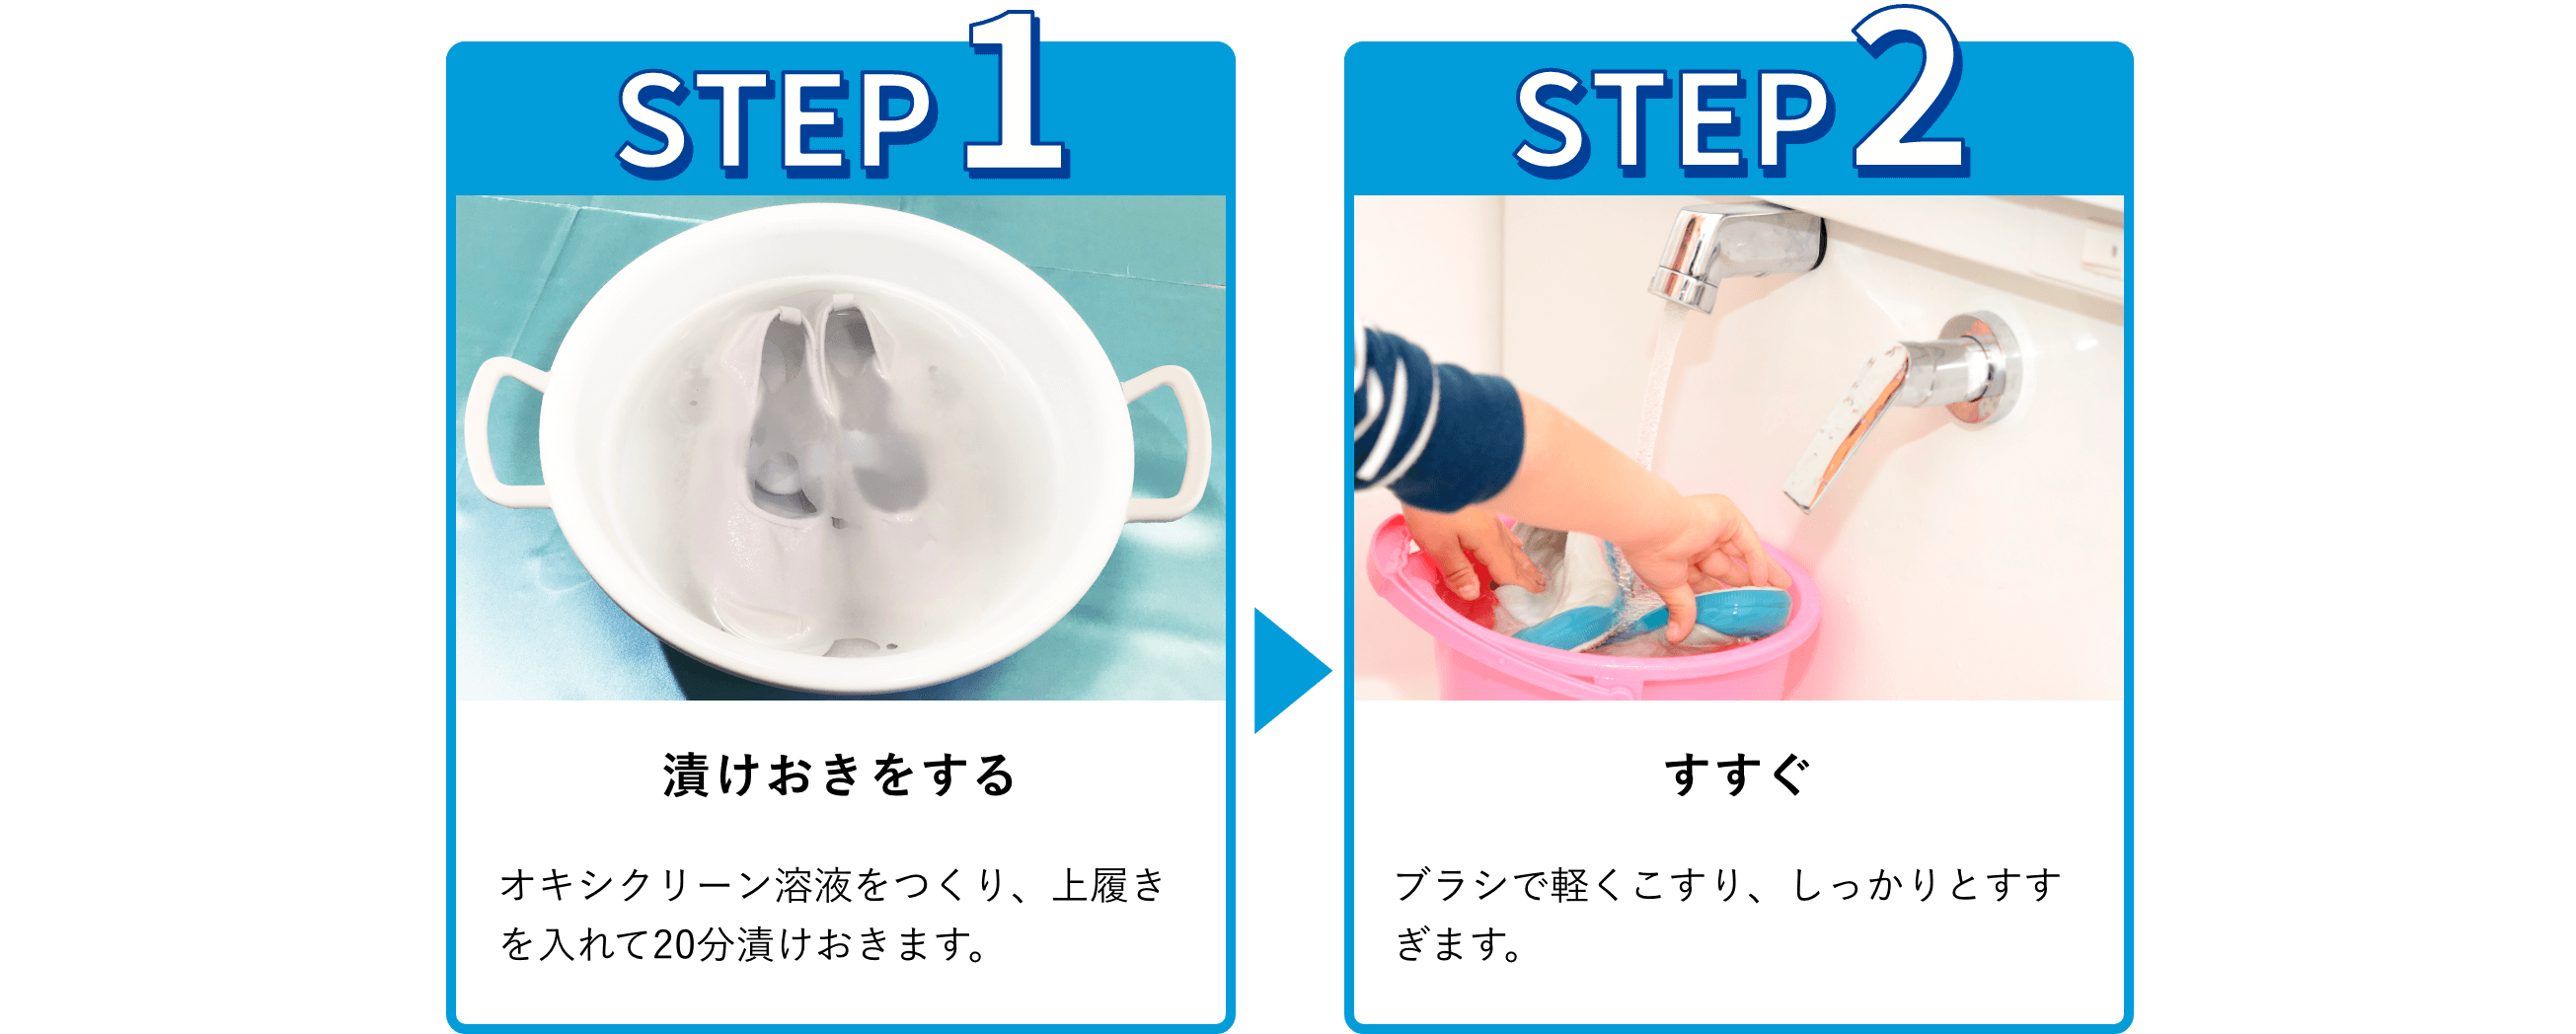 使用手順：1.漬けおきをする。オキシクリーン溶液をつくり、上履きを入れて20分程漬けおきする。2.ブラシでこする。ブラシでこすり洗いをする。3.すすぐ。しっかり水ですすぎます。